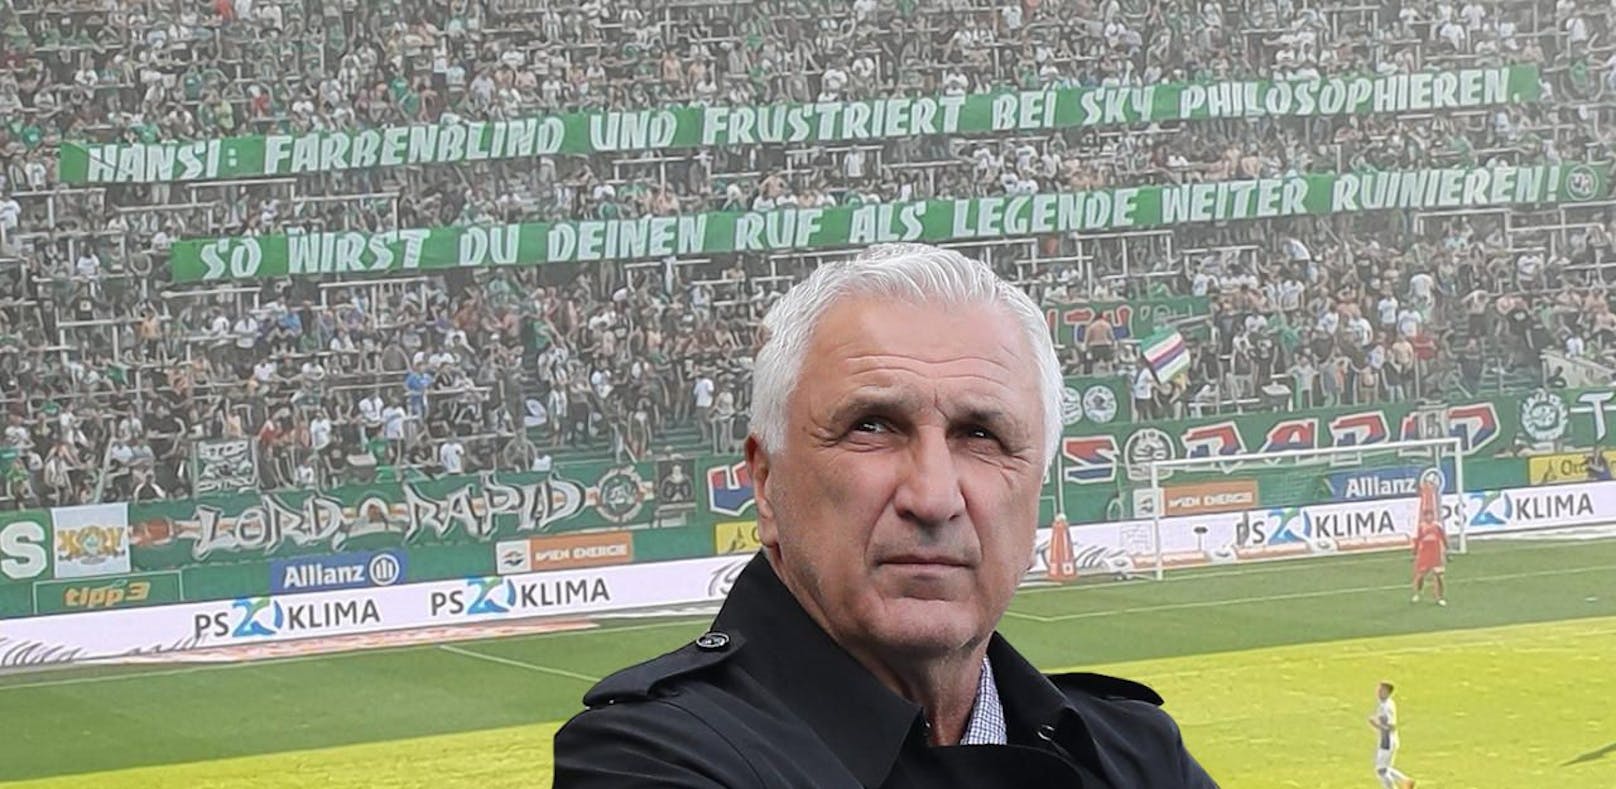 Hans Krankl wurde von den Rapid Ultras wegen seines Hemdes kritisiert. Die Vereins-Ikone zeigt sich getroffen.